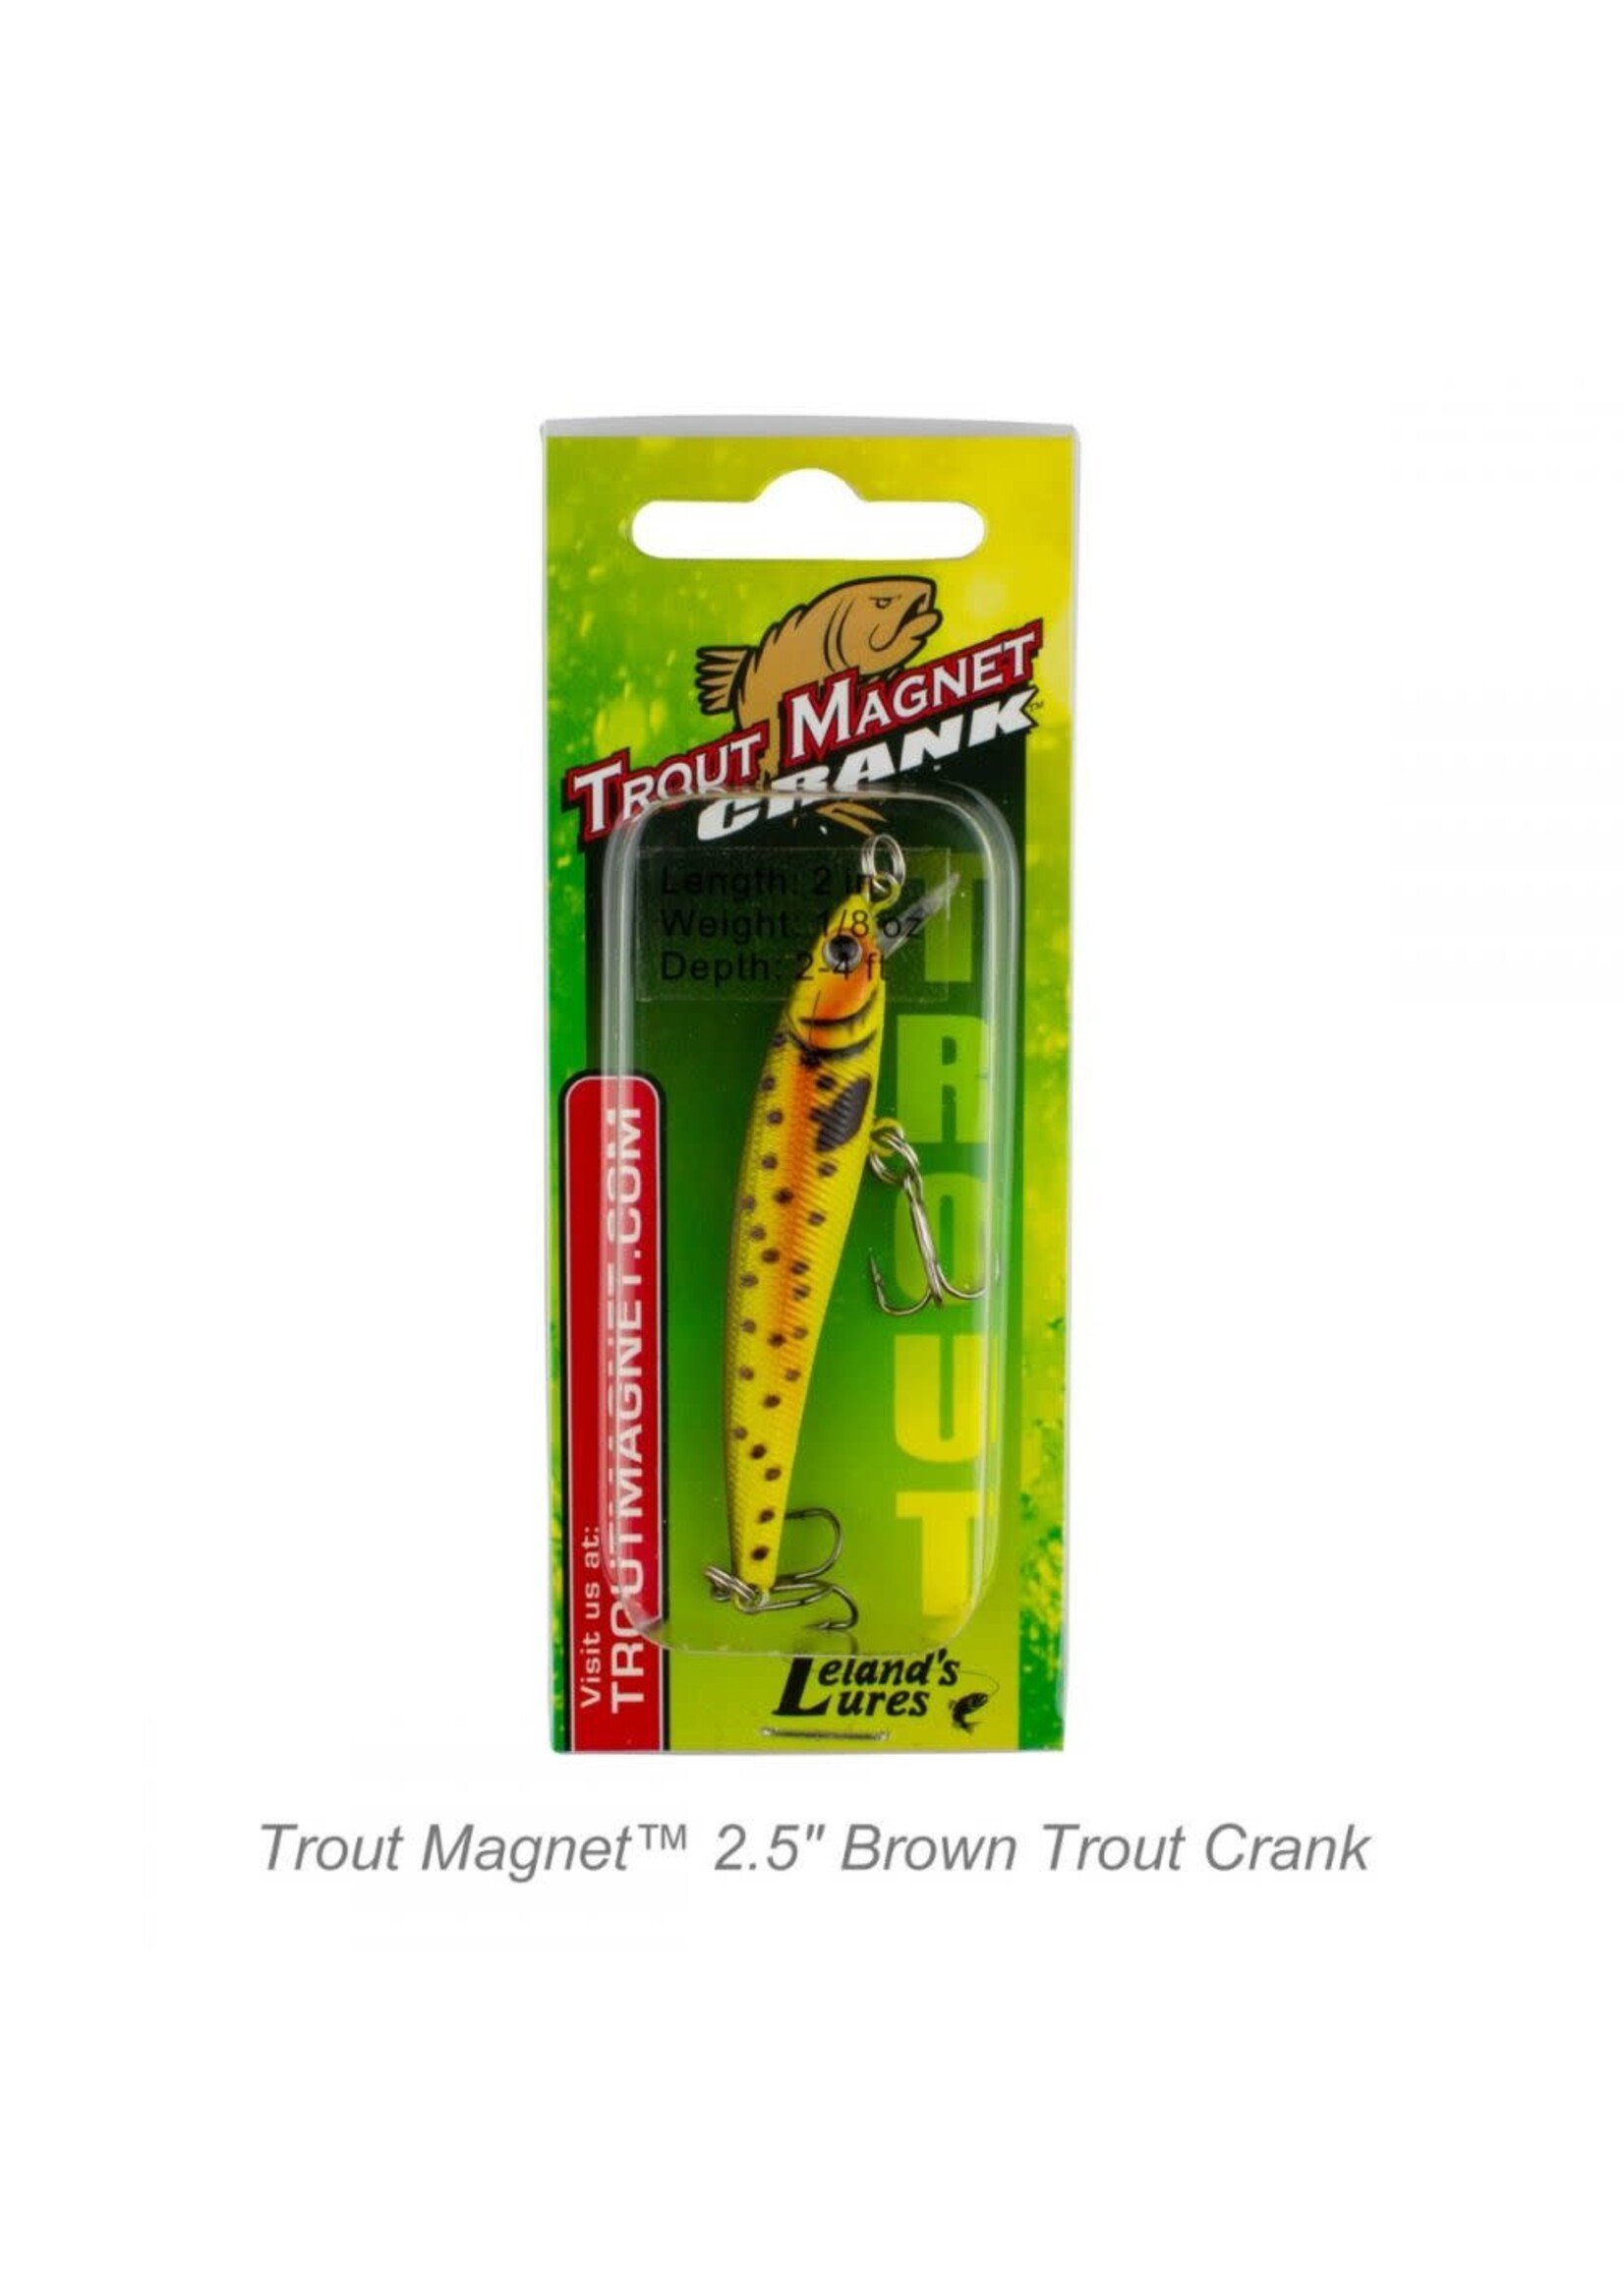 3=pack lot Trout Magnet 3.5 Crankbait XD Lure Leland's Lures Hawk clear